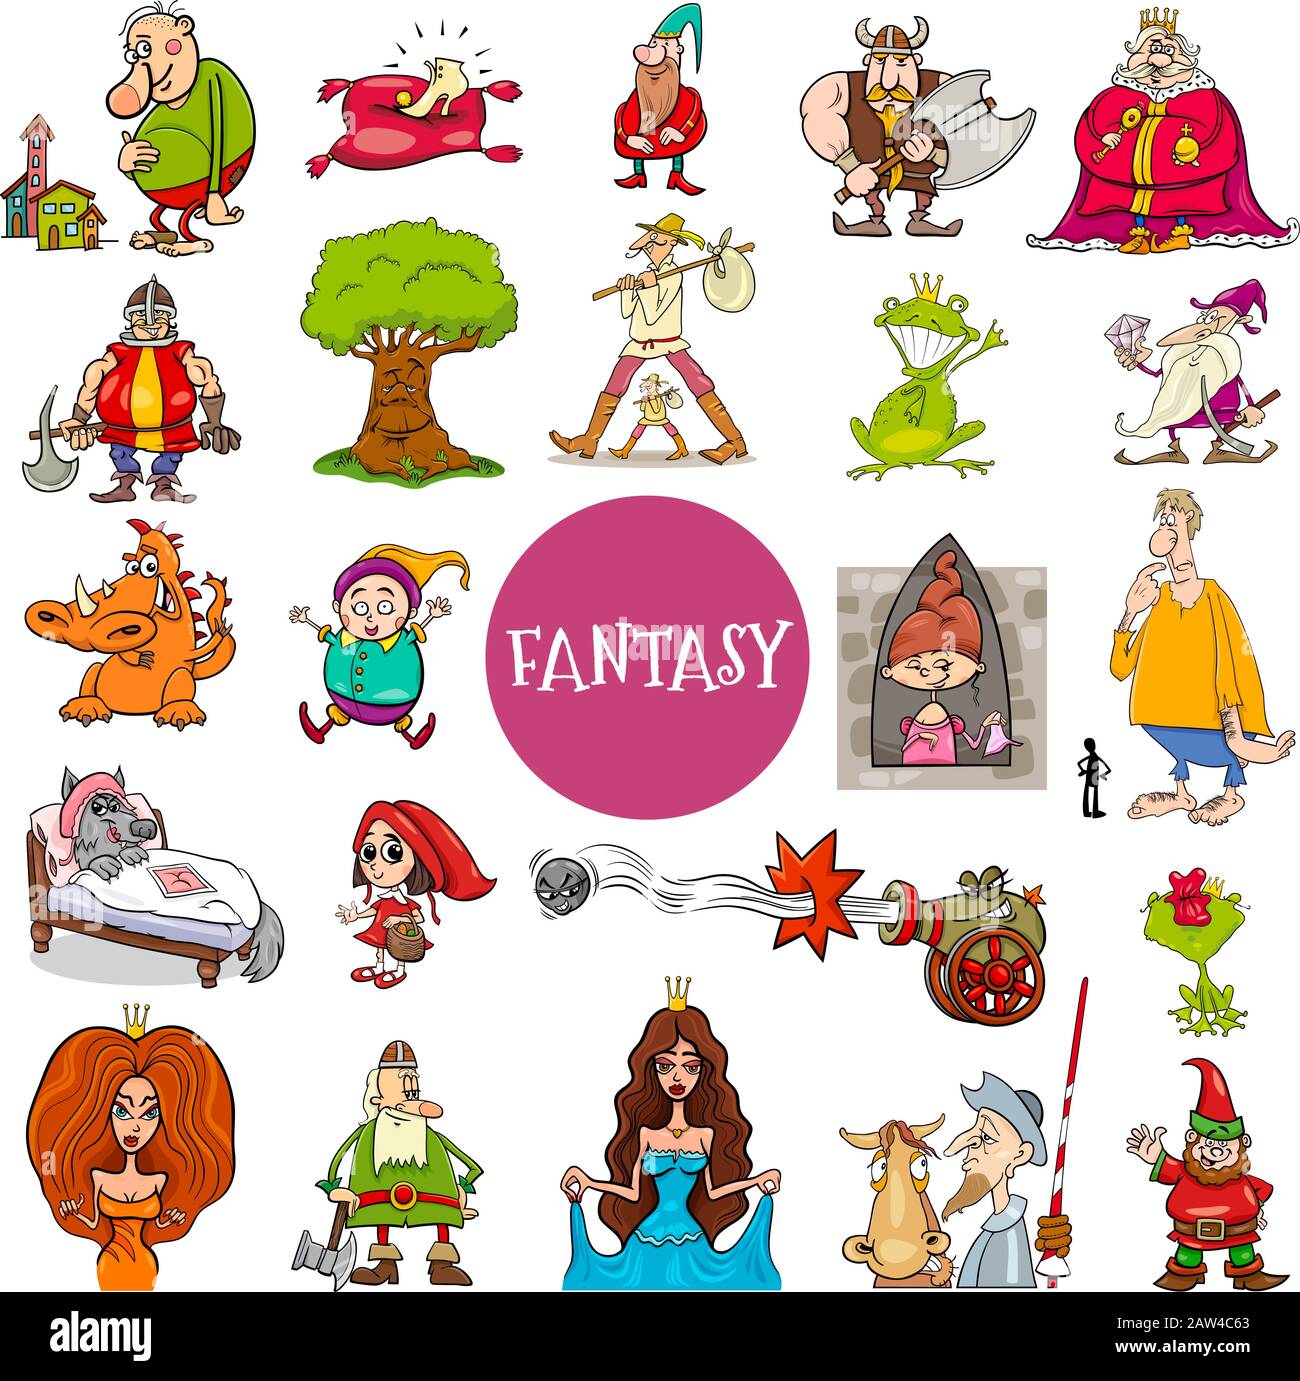 Dessin Animé Illustration De Fantasy Ou Fairy Tale Personnages Grand Ensemble Illustration de Vecteur